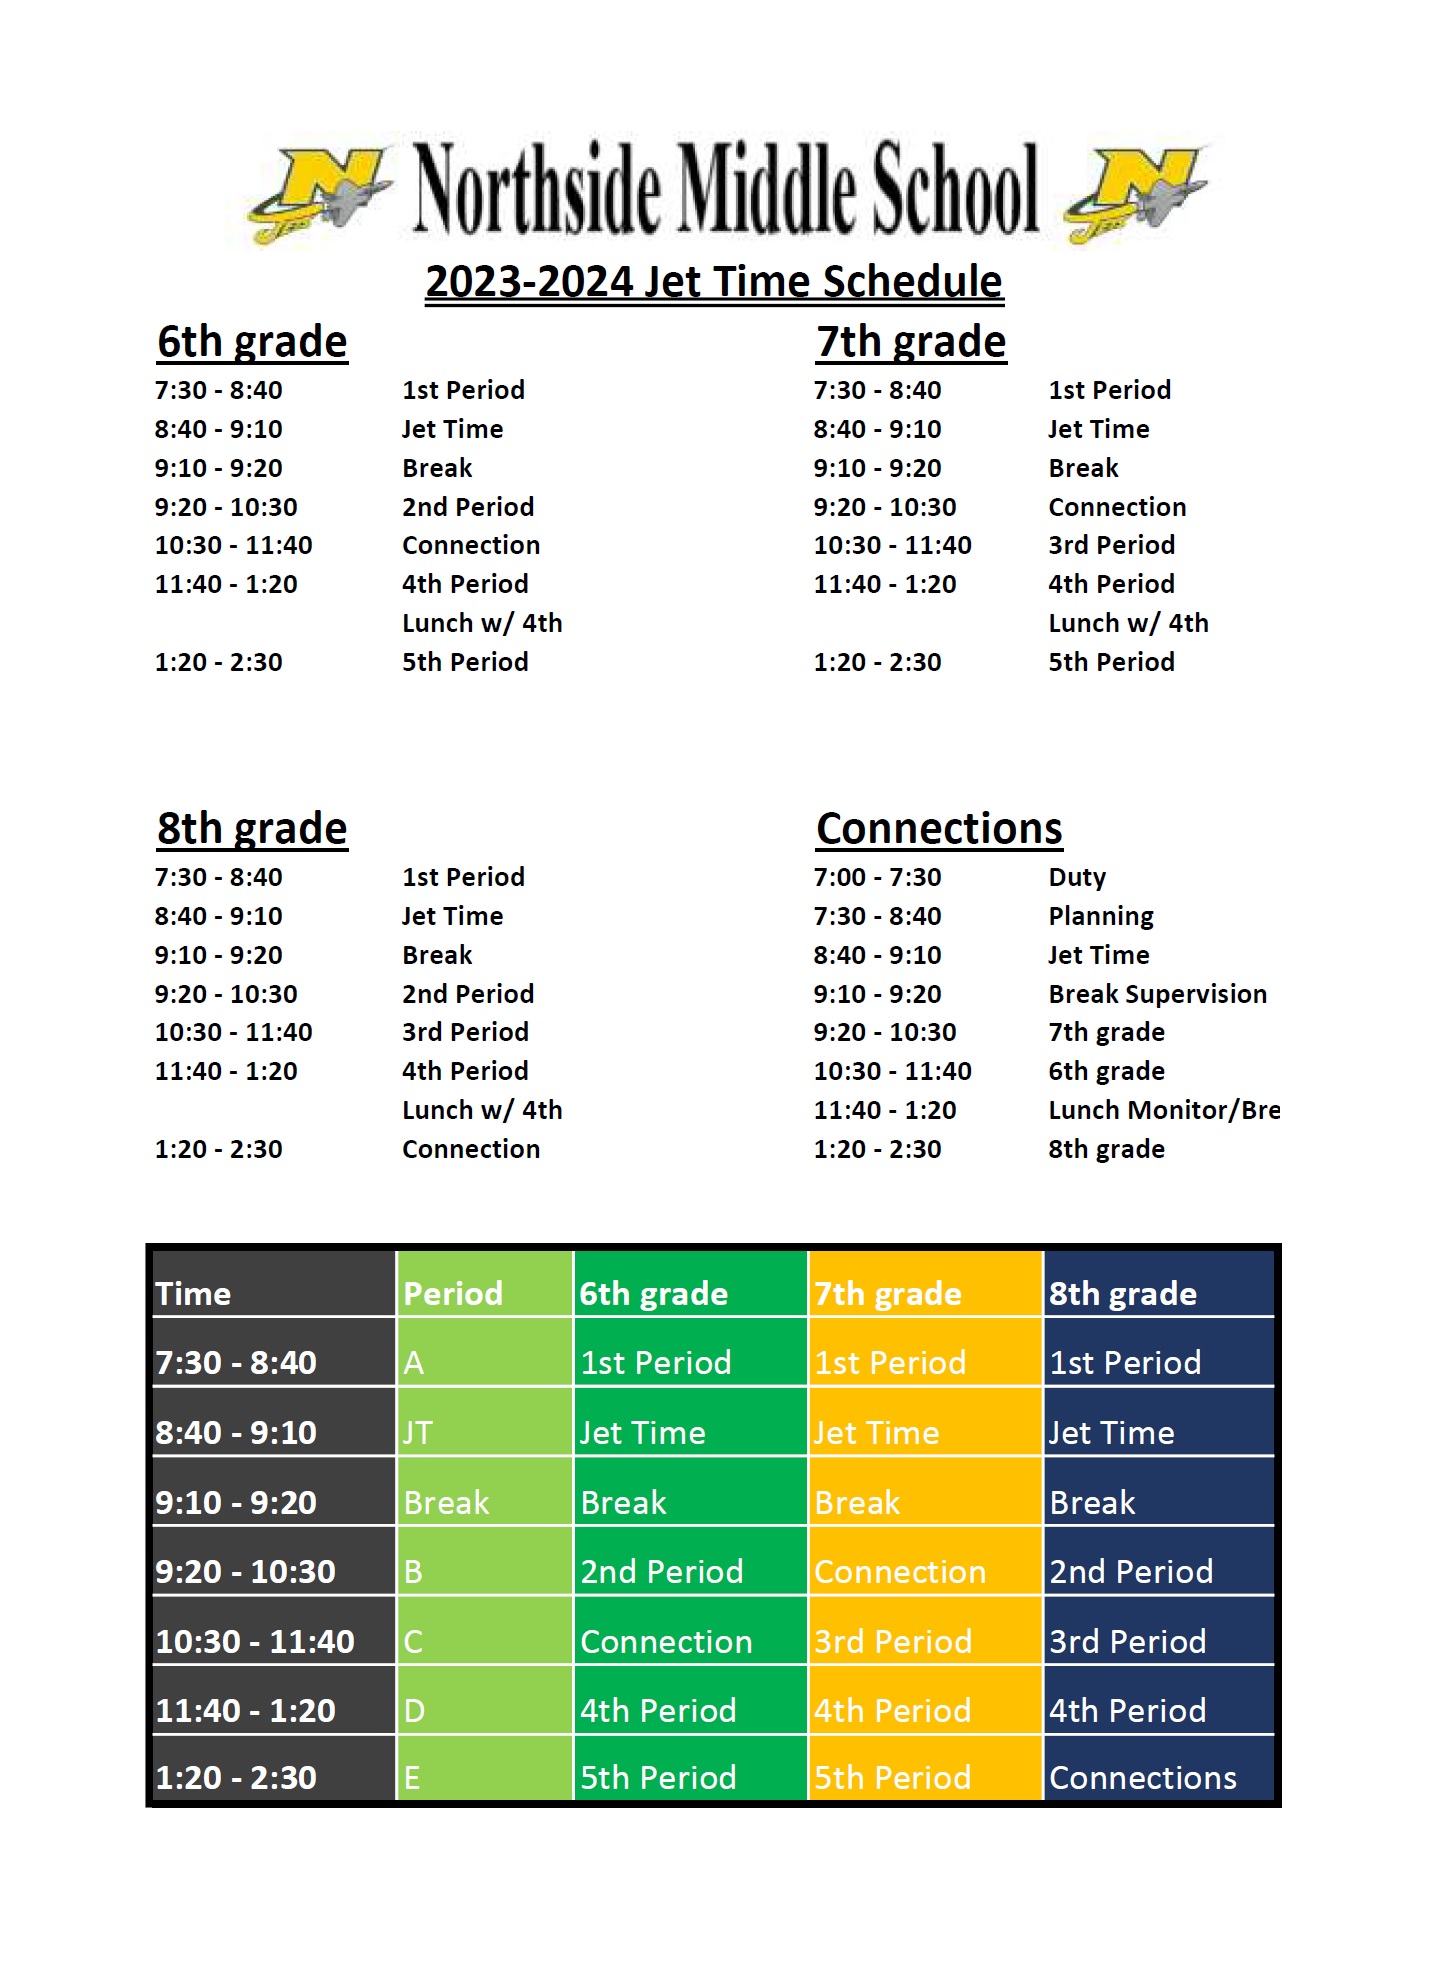 2023-2024 Master Schedule